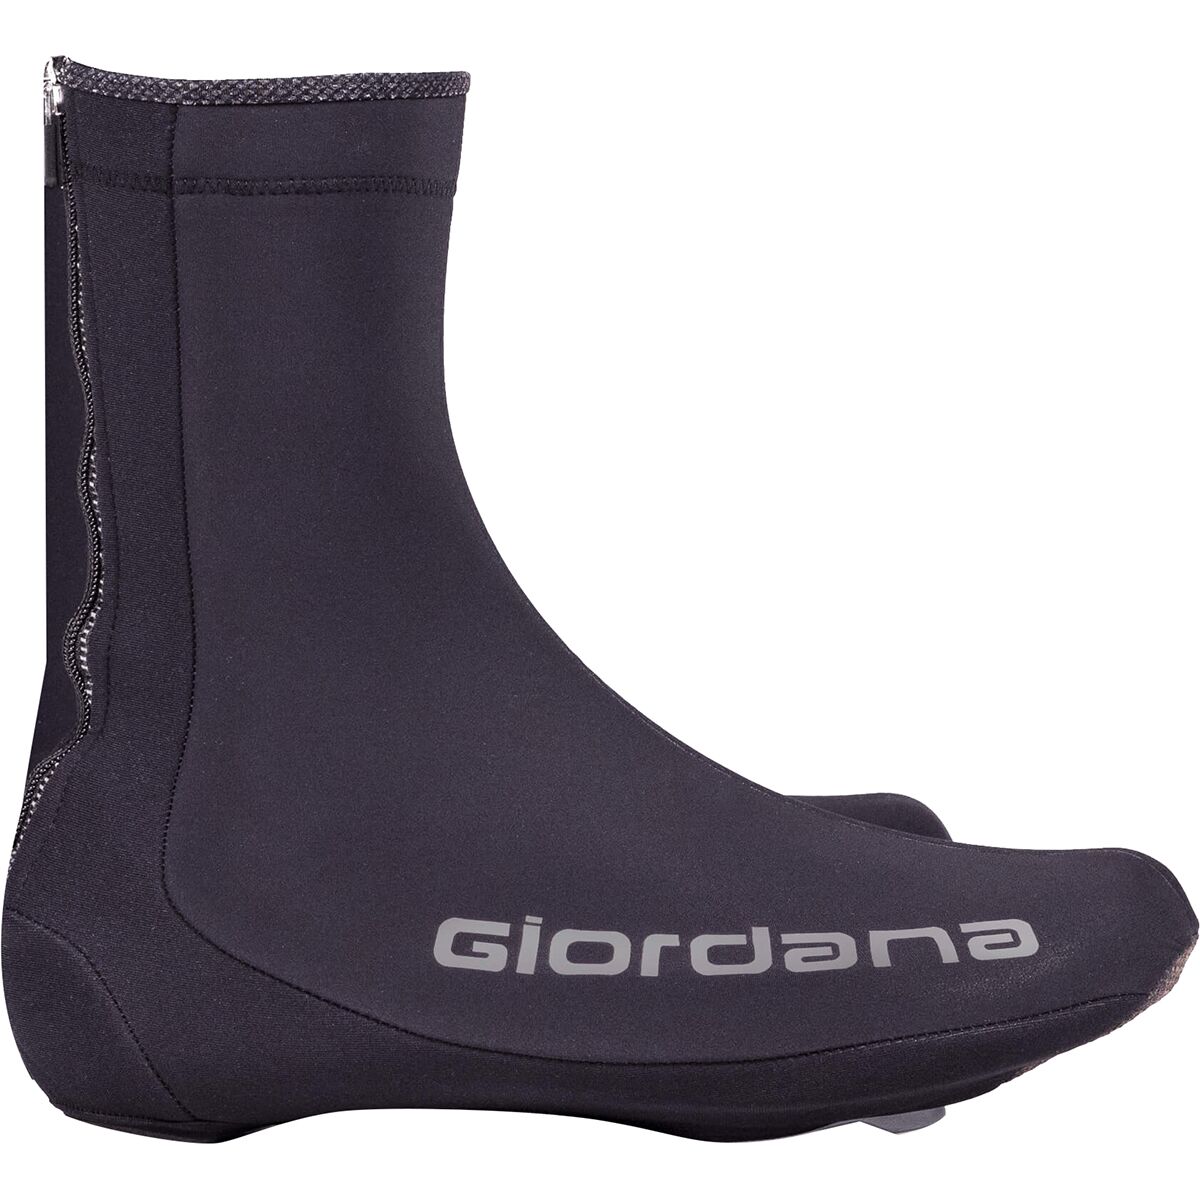 Giordana AV-200 Winter Shoe Cover